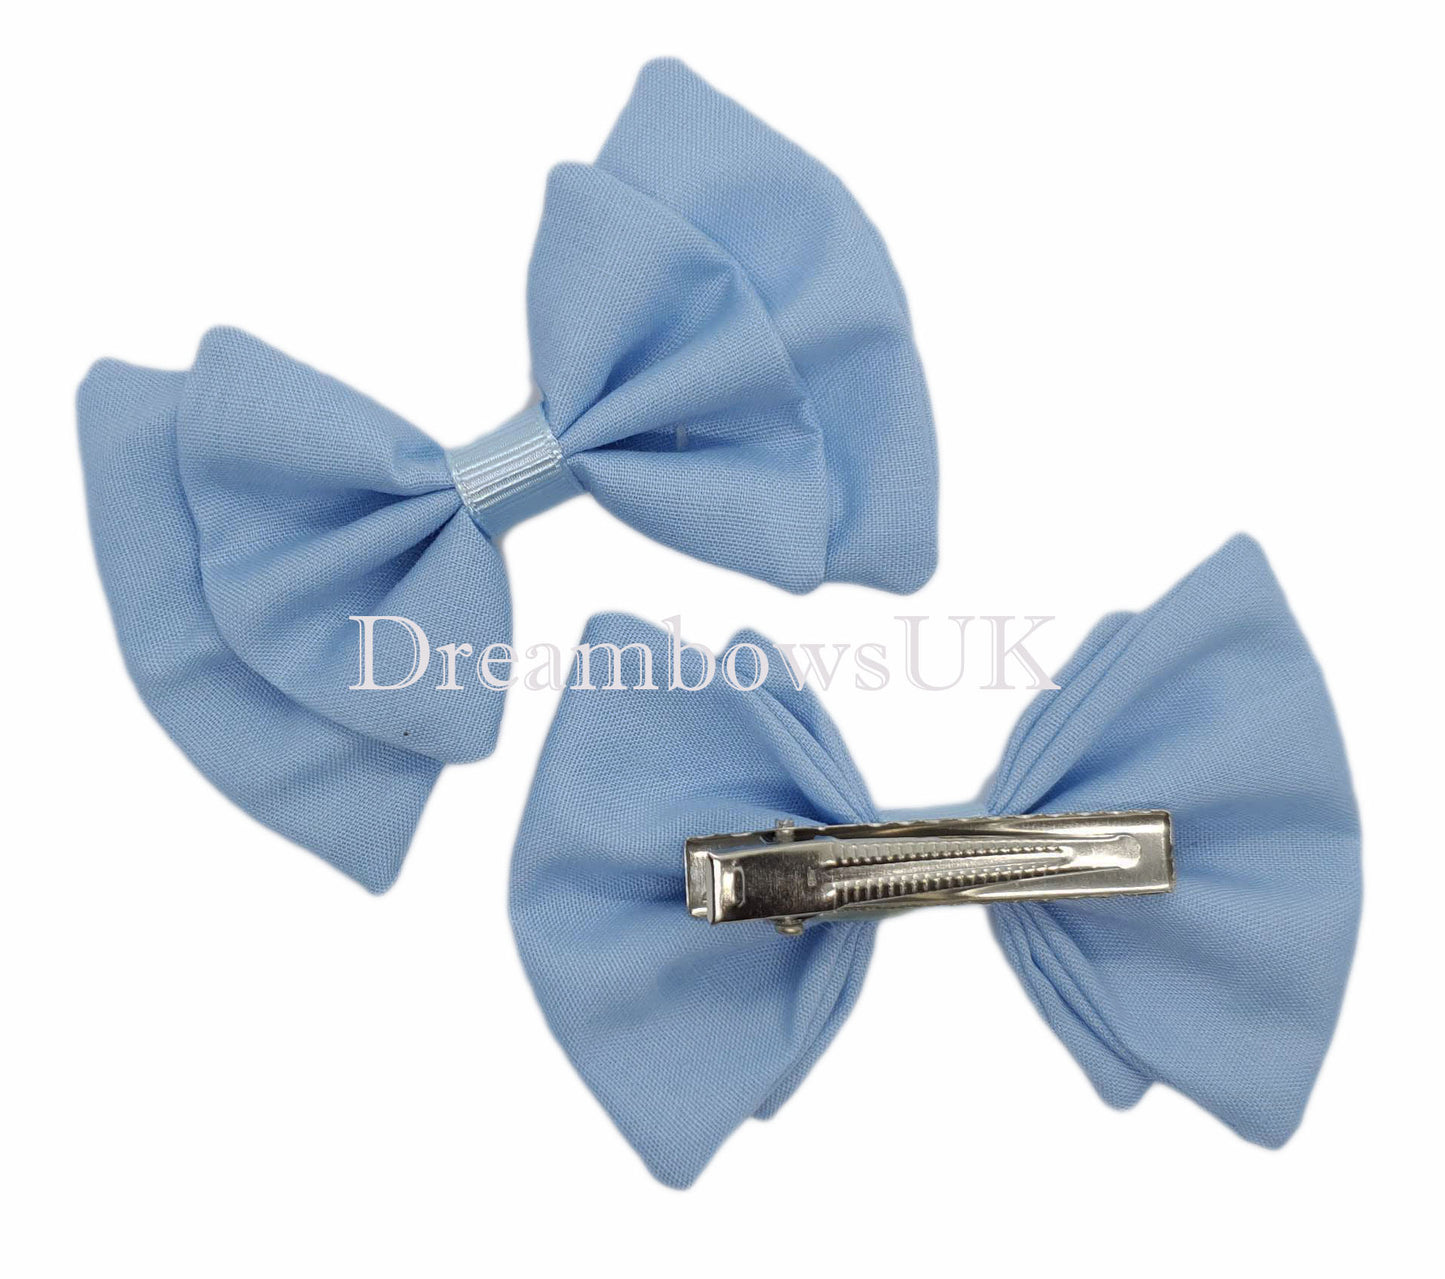 2x Baby blue fabric hair bows